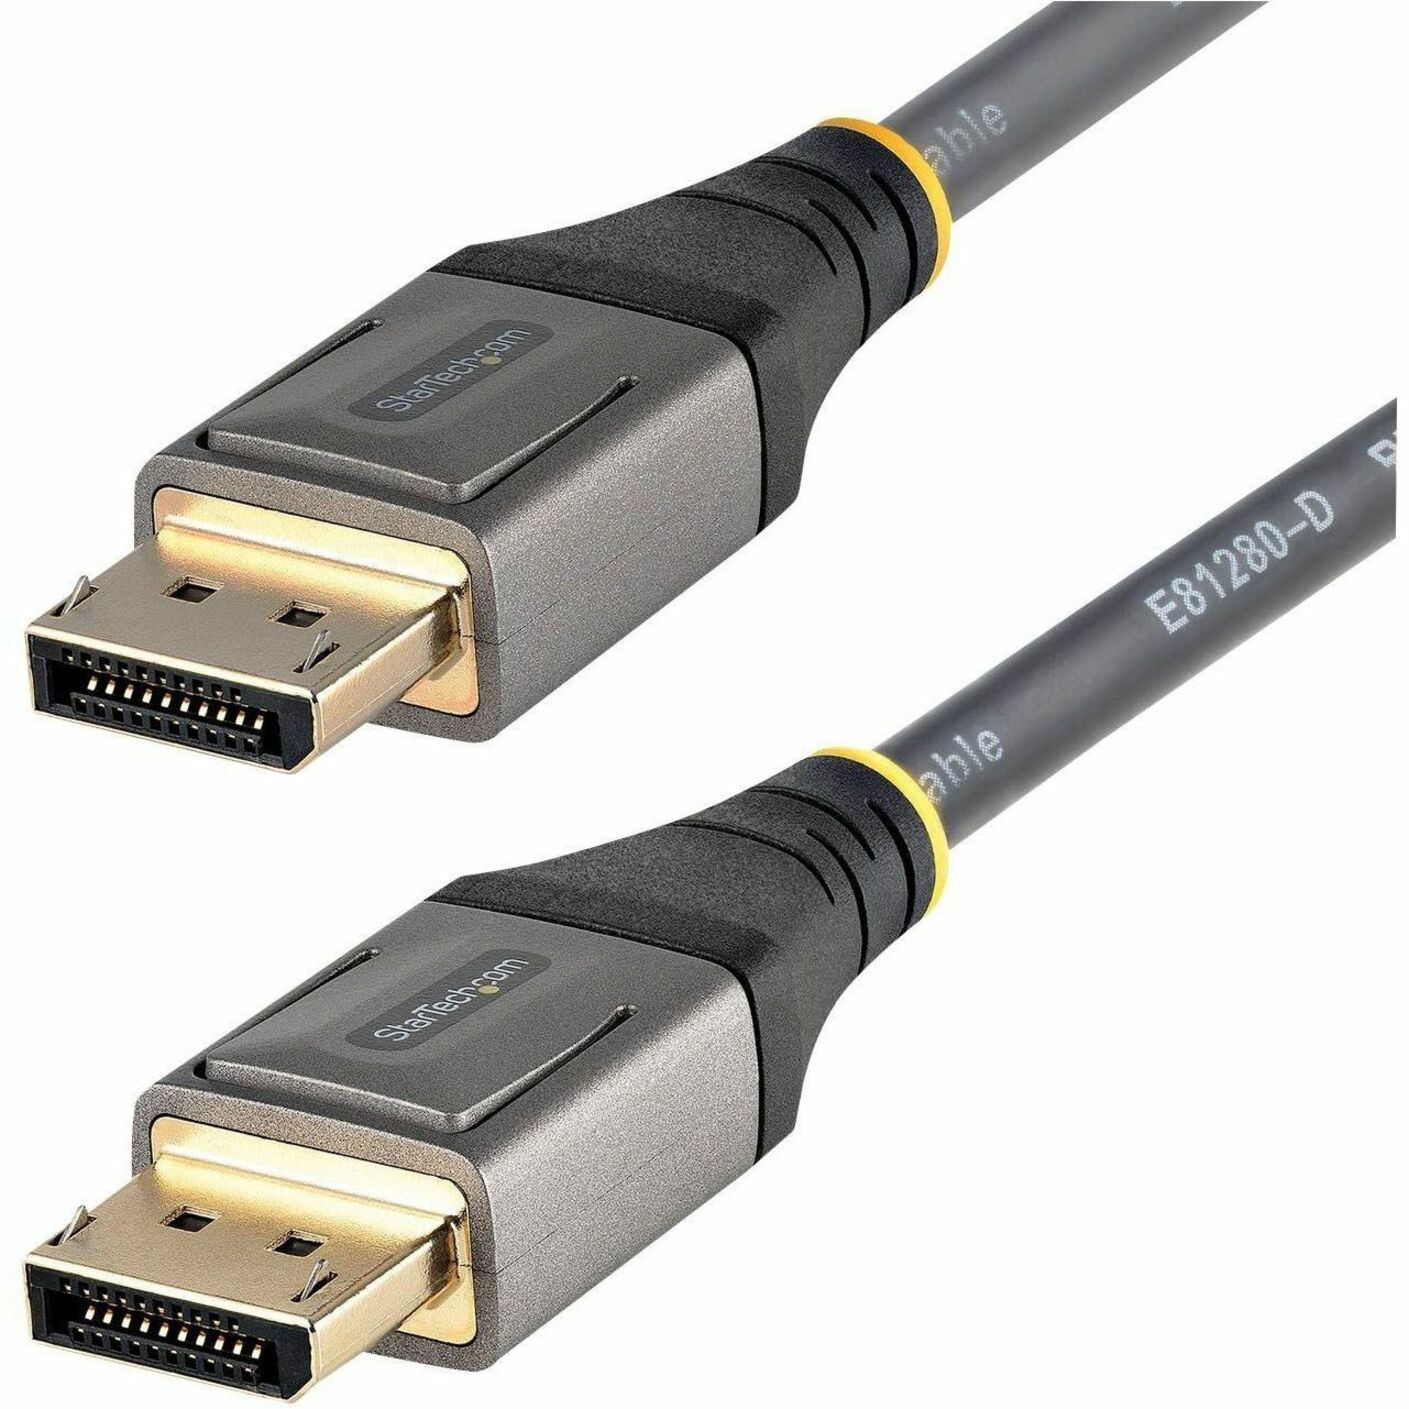 StarTech.com Câble DisplayPort 1.4 8K 6ft (2m) Certifié VESA 8K 60Hz HDR10 Vidéo UHD 4K 120Hz Cordon Moniteur DP vers DP